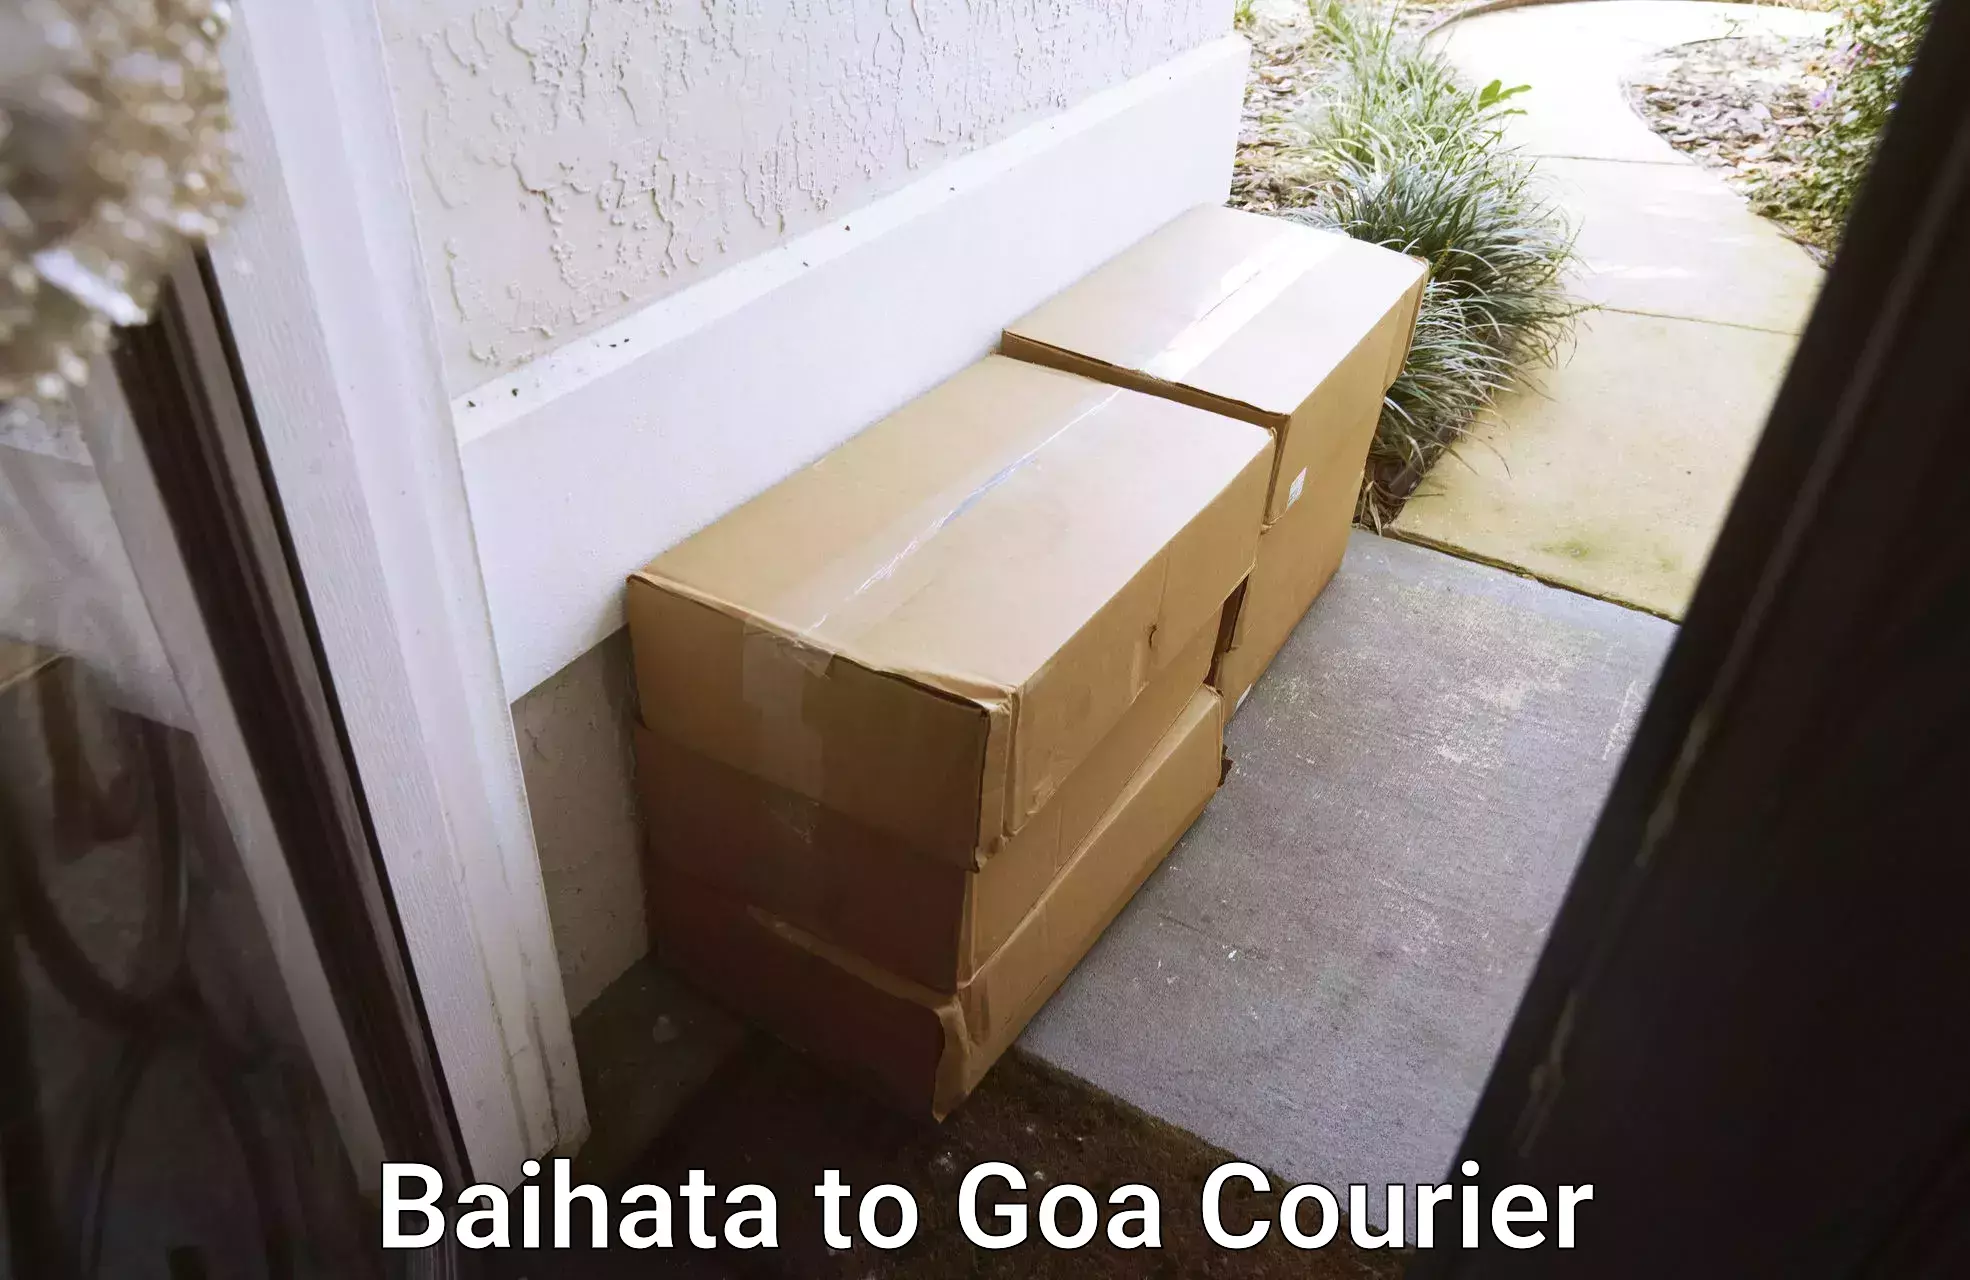 Digital courier platforms Baihata to South Goa